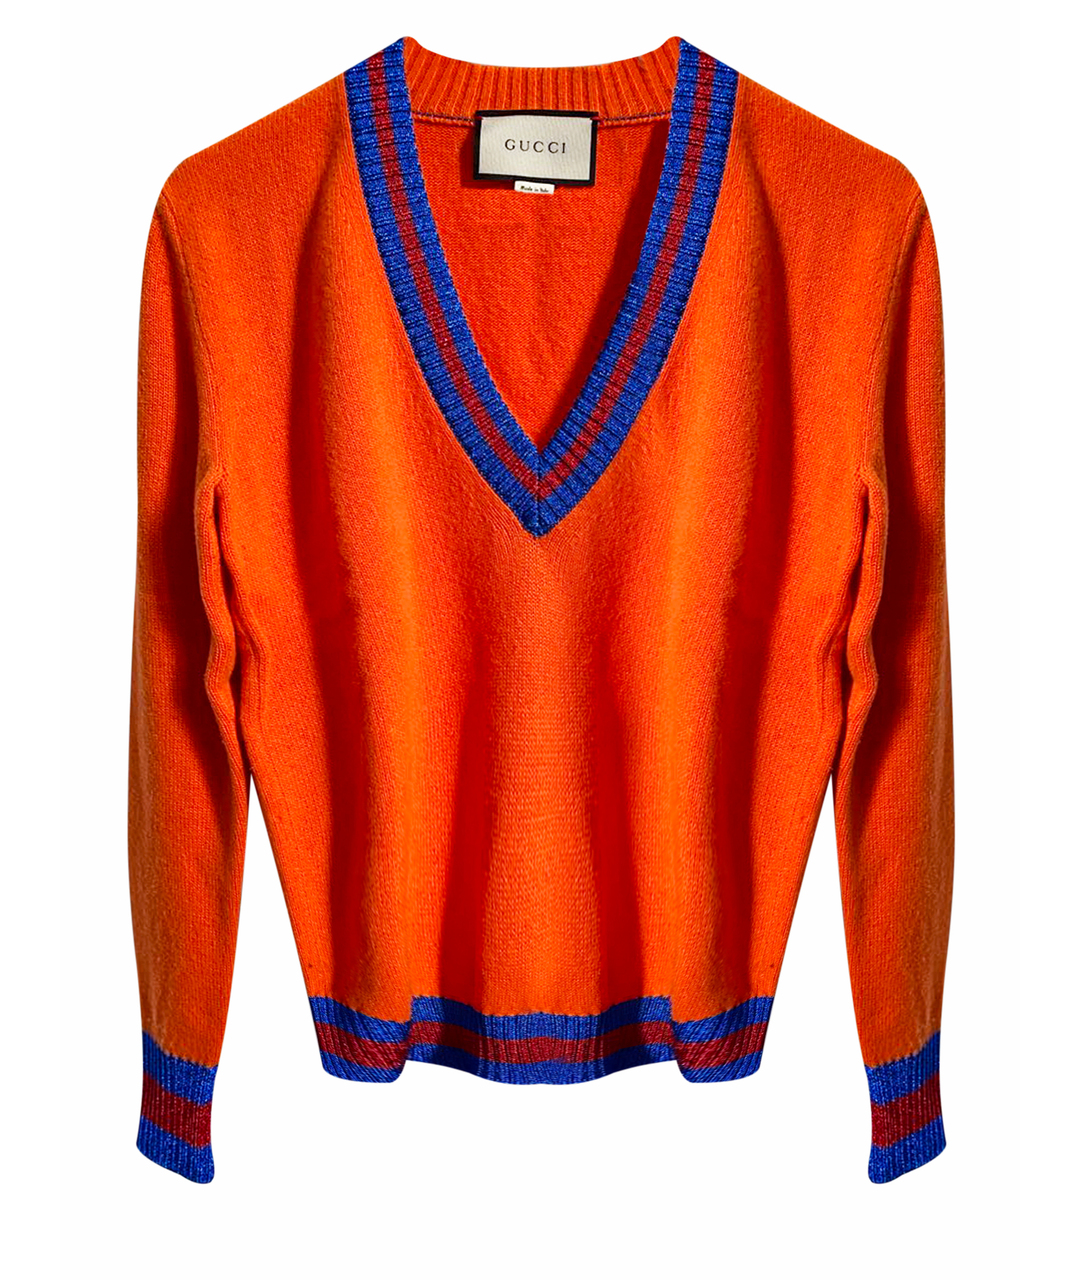 GUCCI Оранжевый шерстяной джемпер / свитер, фото 1